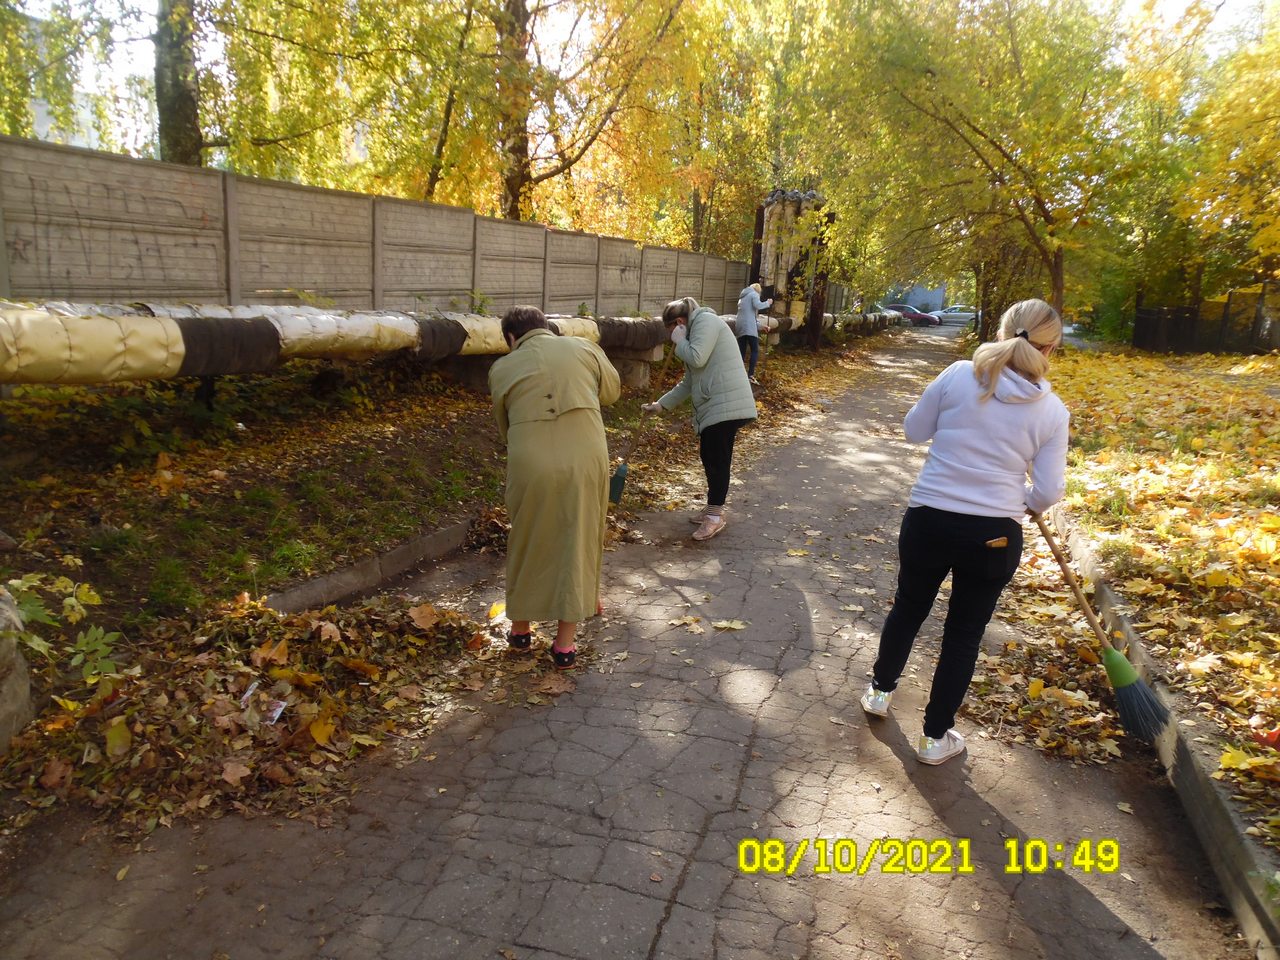 В организациях Московского района стартовал осенний месячник по благоустройству и санитарной очистке территории 08.10.2021